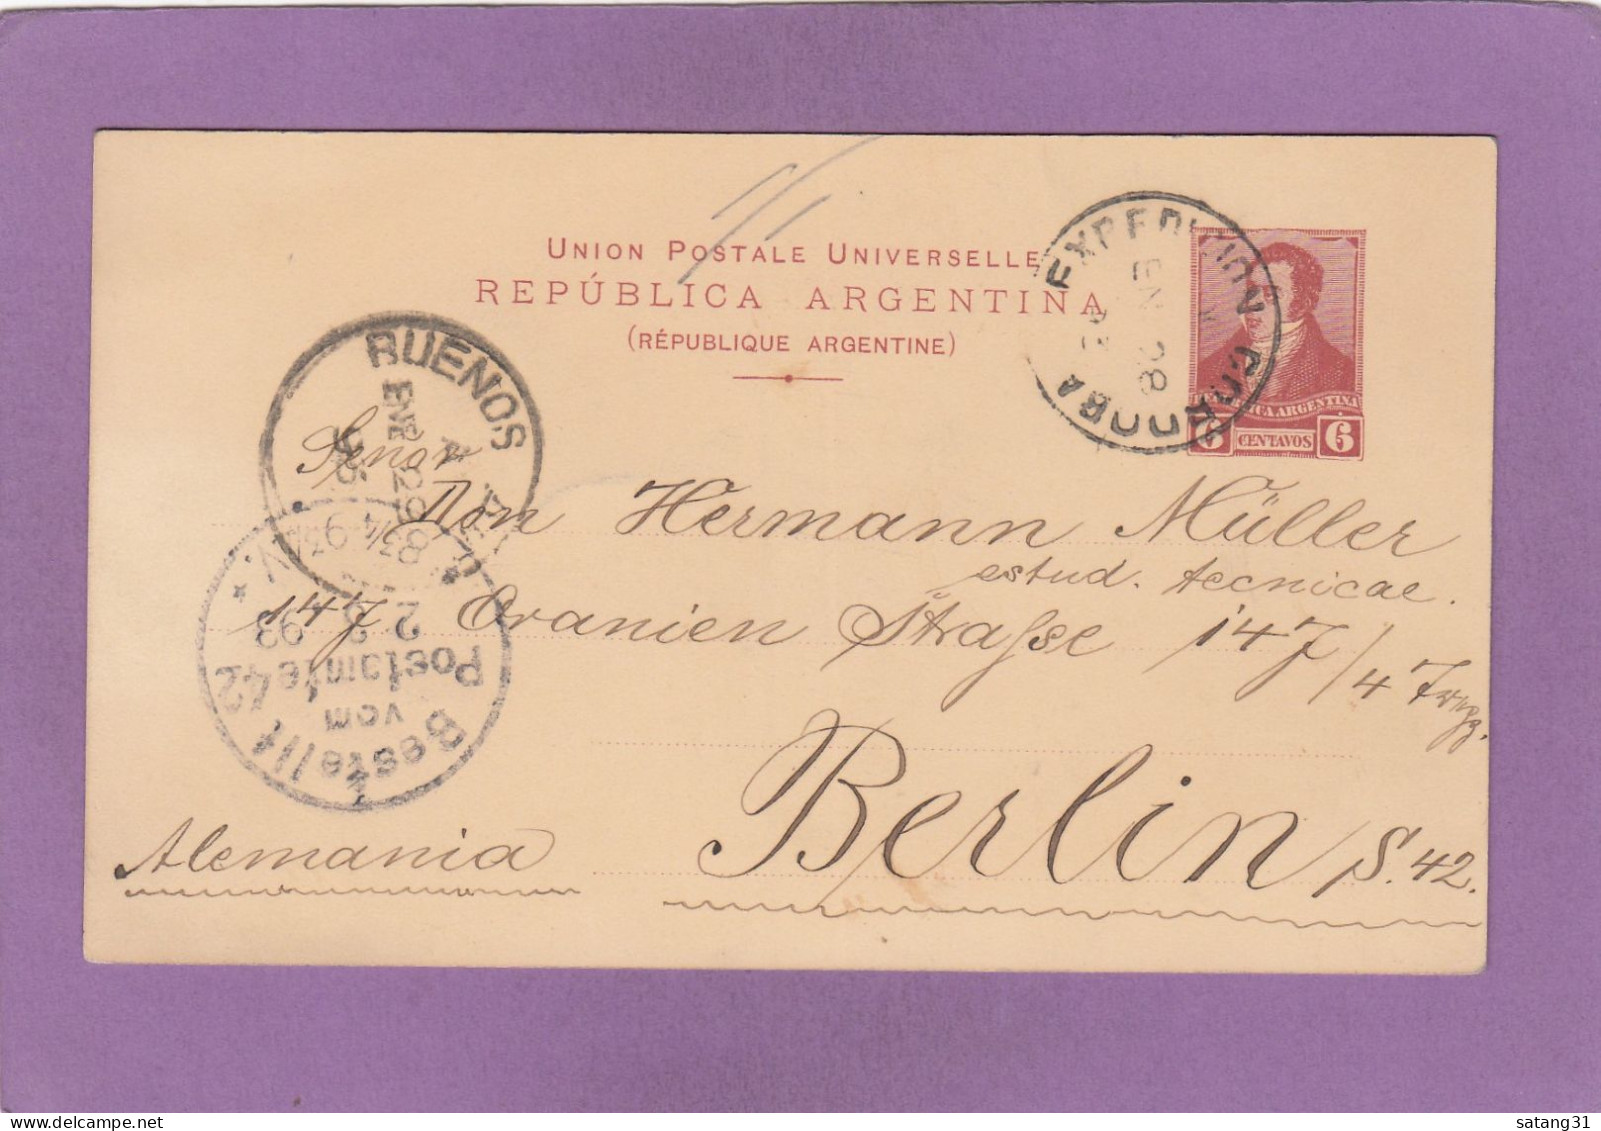 ENTIER POSTAL DE CORDOBA POUR BERLIN,VIA BUENOS AIRES,1893. - Postal Stationery